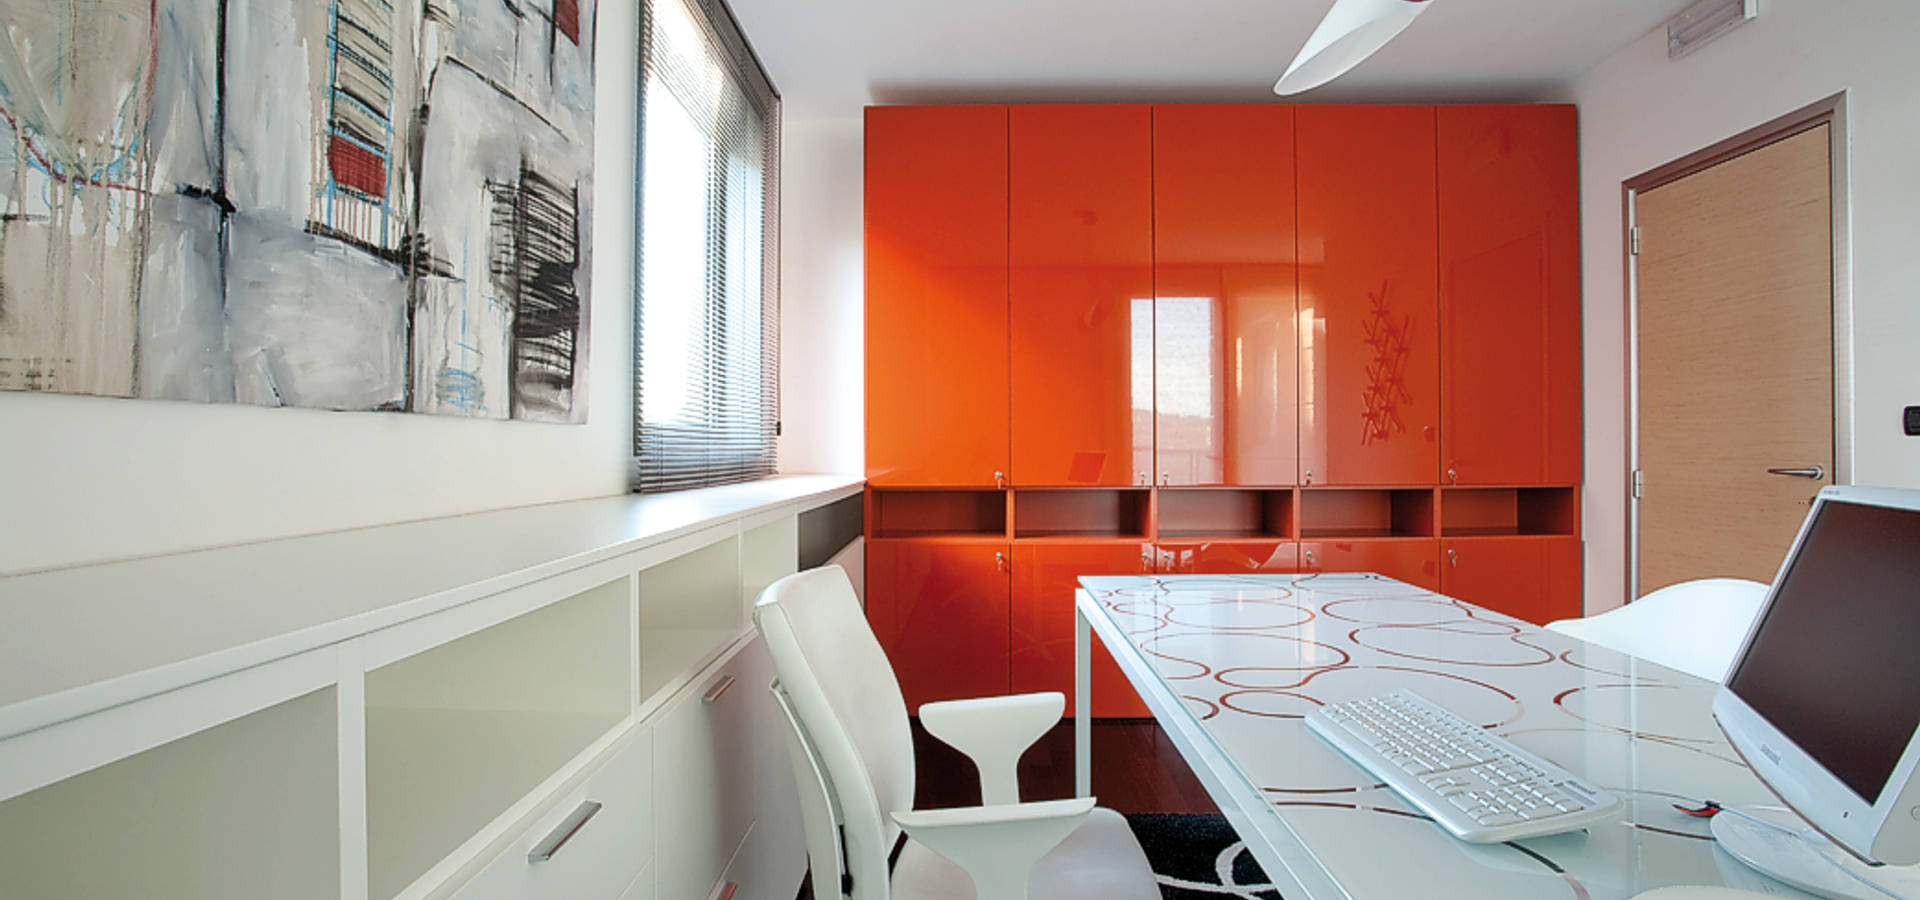 Ruffini Design Studio Architects In Italia Homify